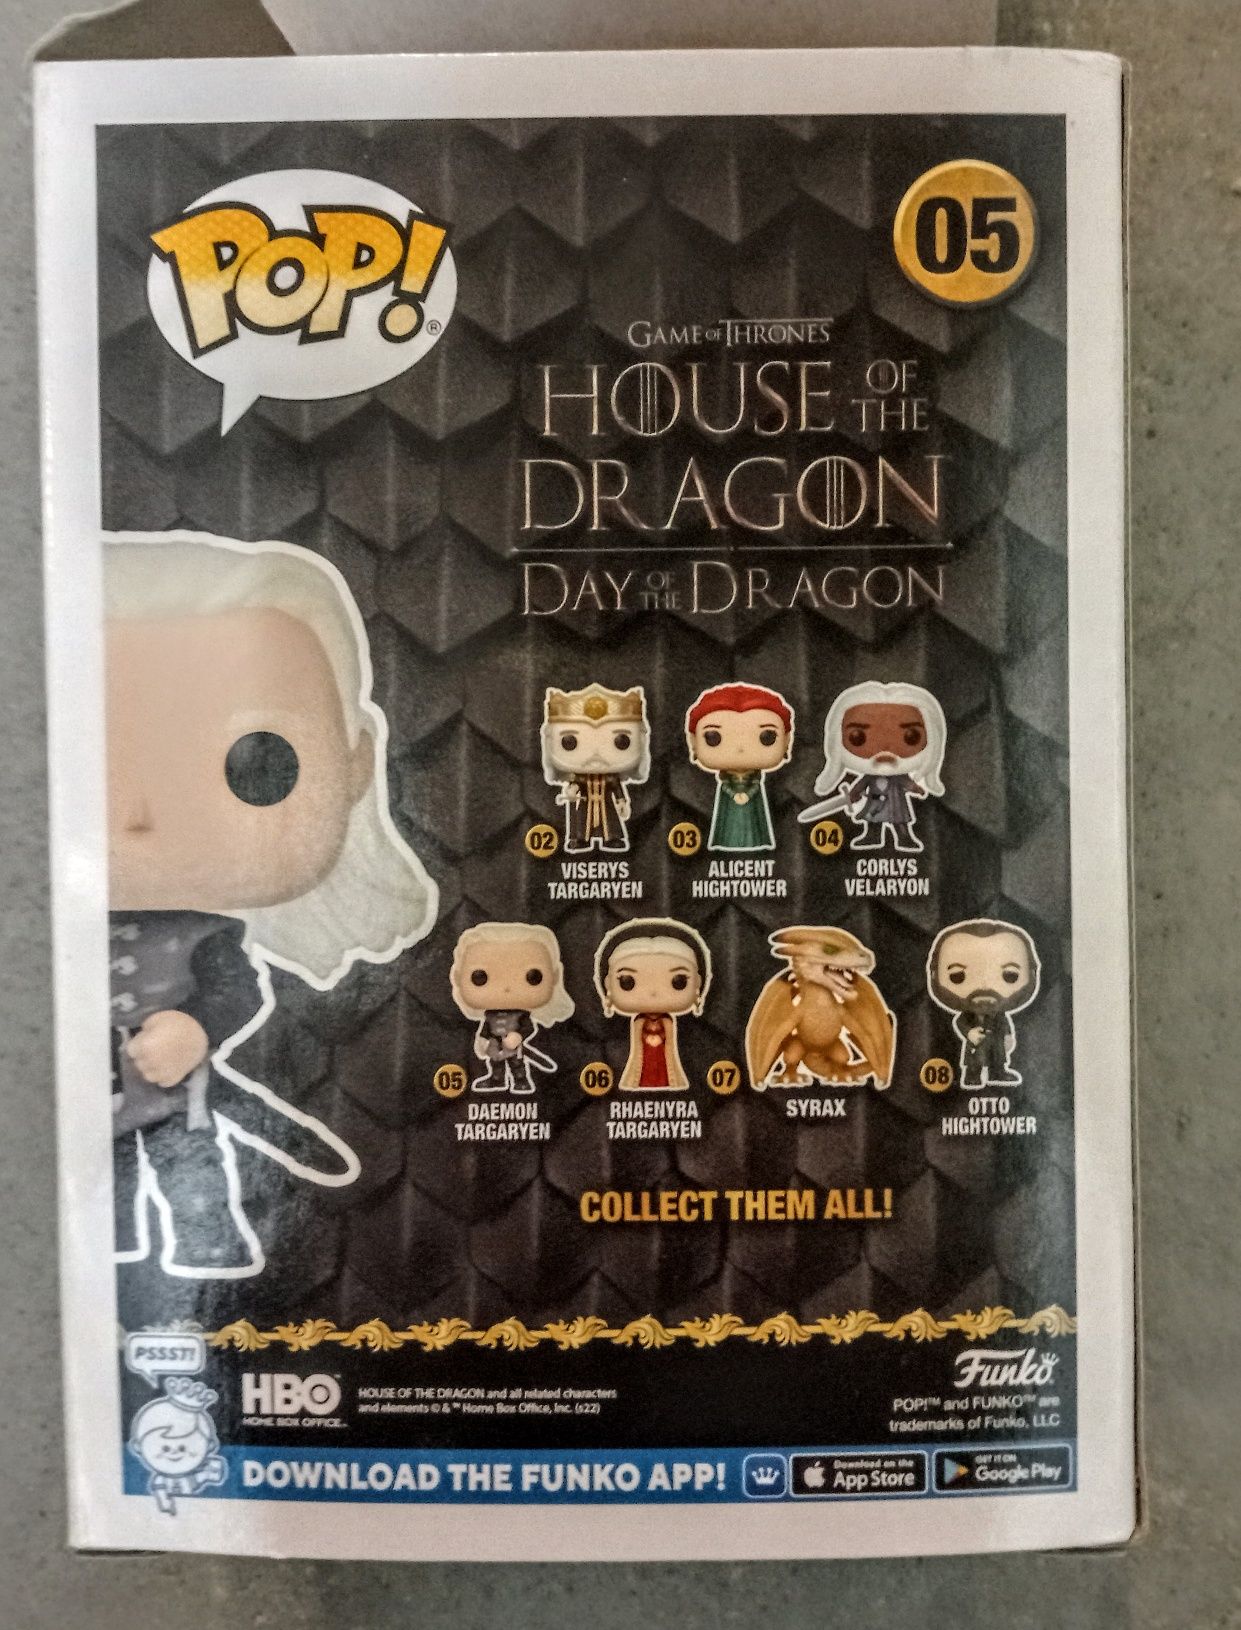 House of the dragon - Daemon Targaryen